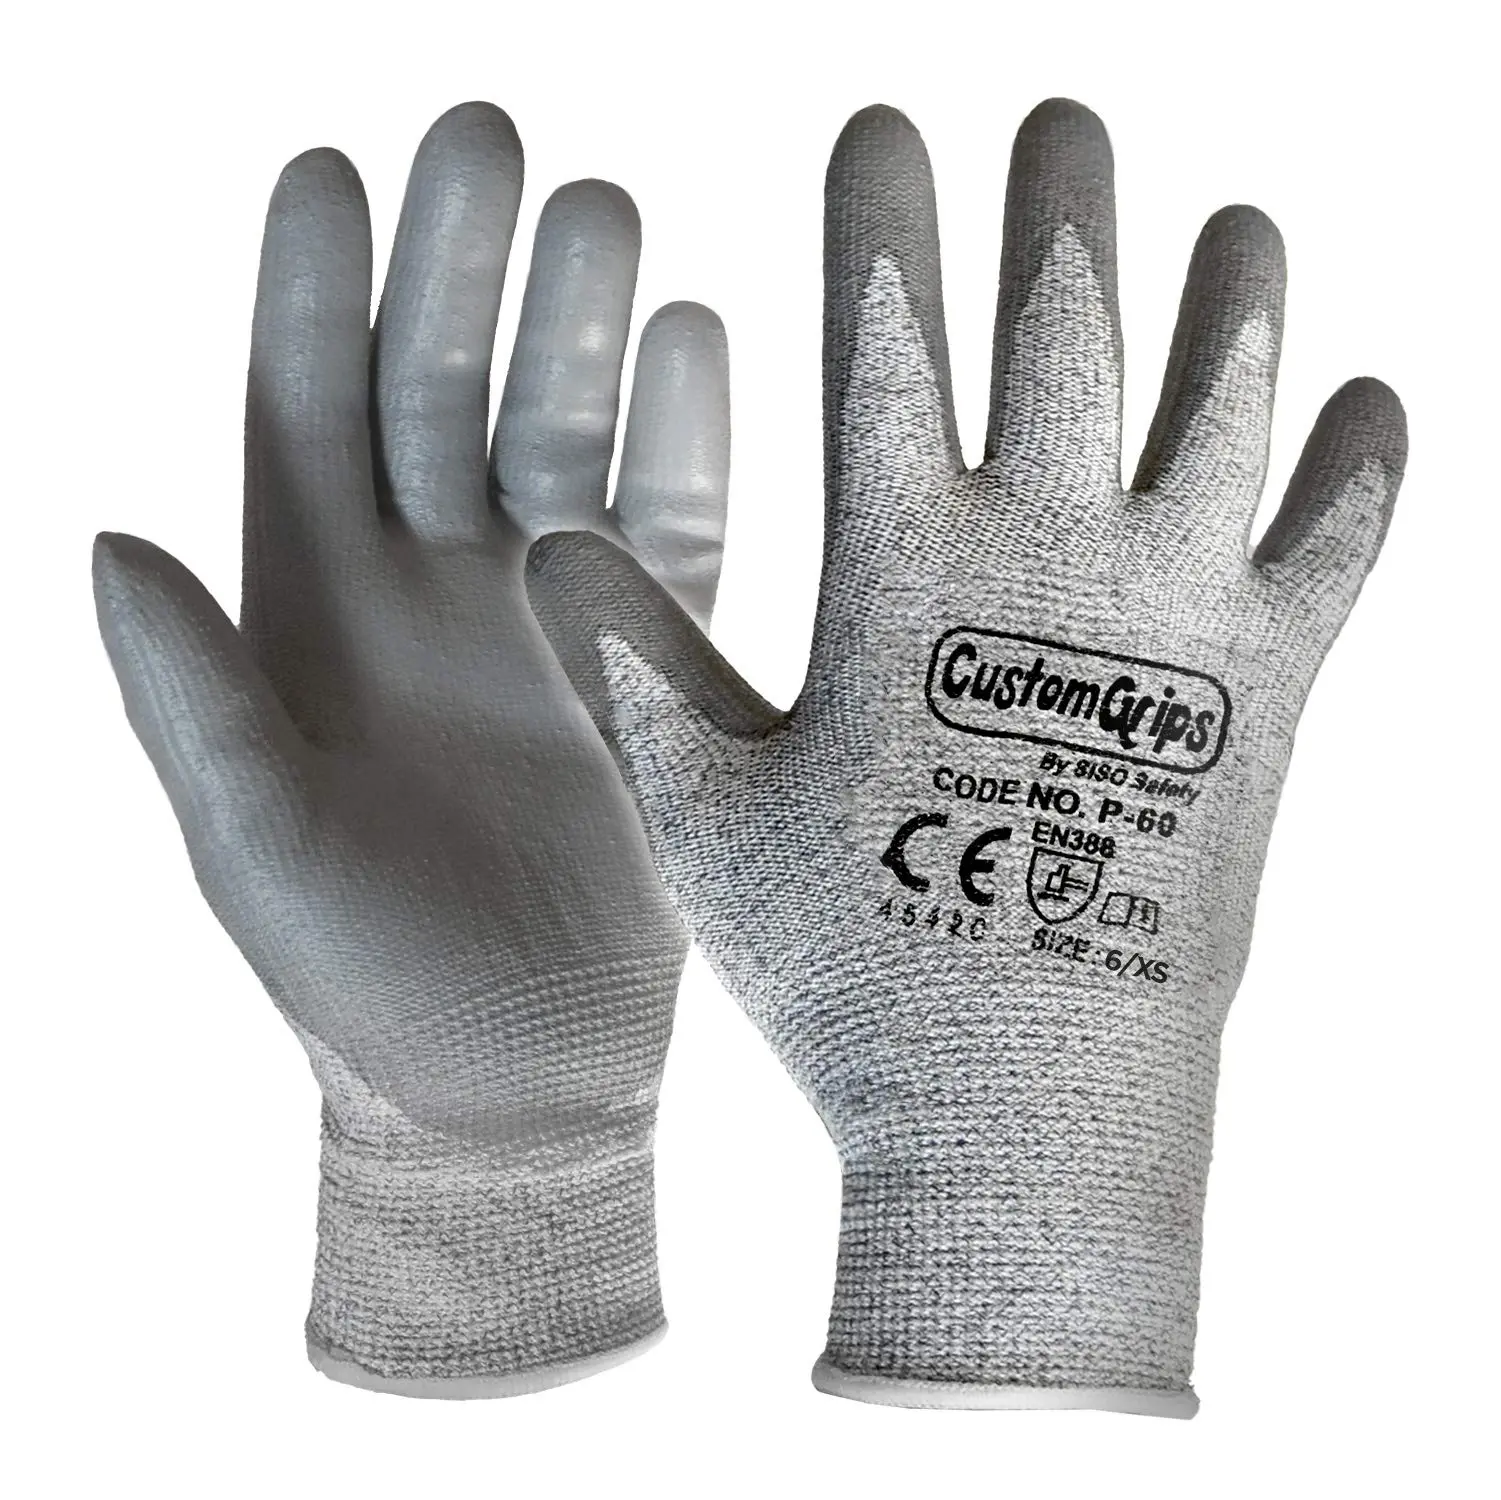 guantes para fibra de vidrio - Qué guantes se utilizan para trabajar con fibra de vidrio